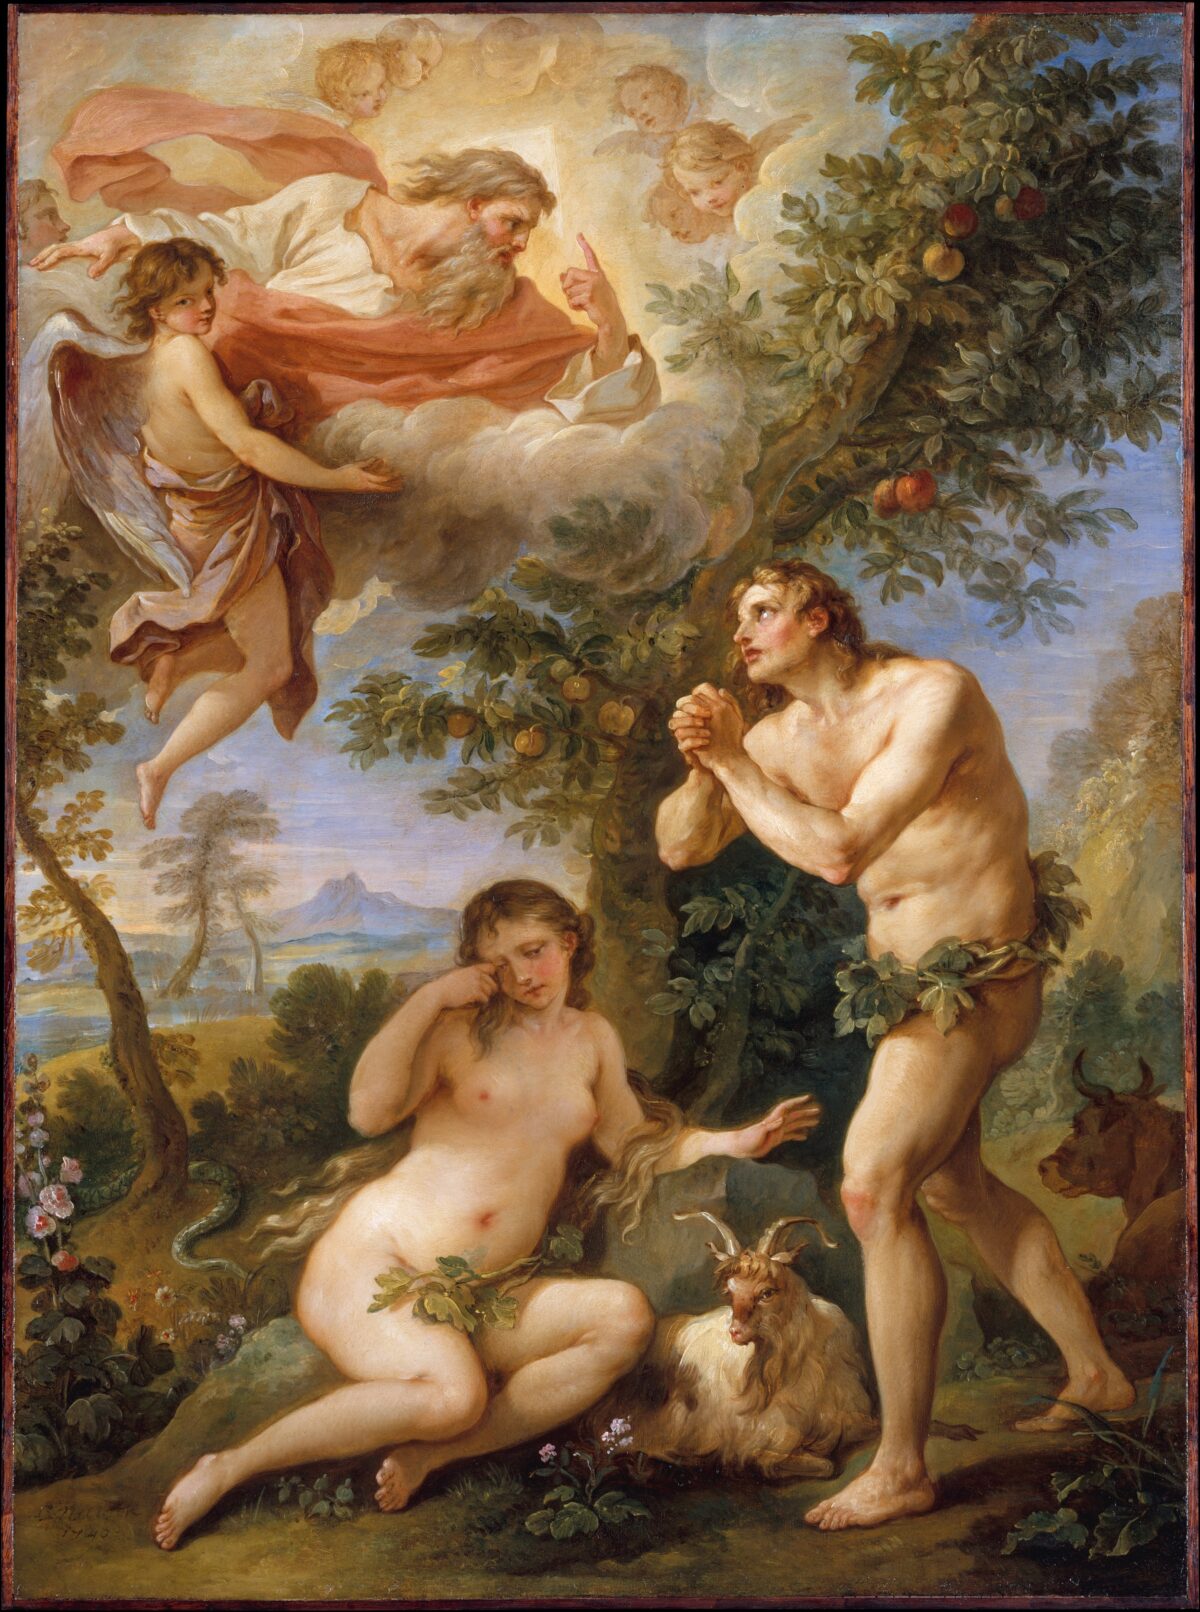 Câu chuyện cổ hay nhất: Adam và Eva